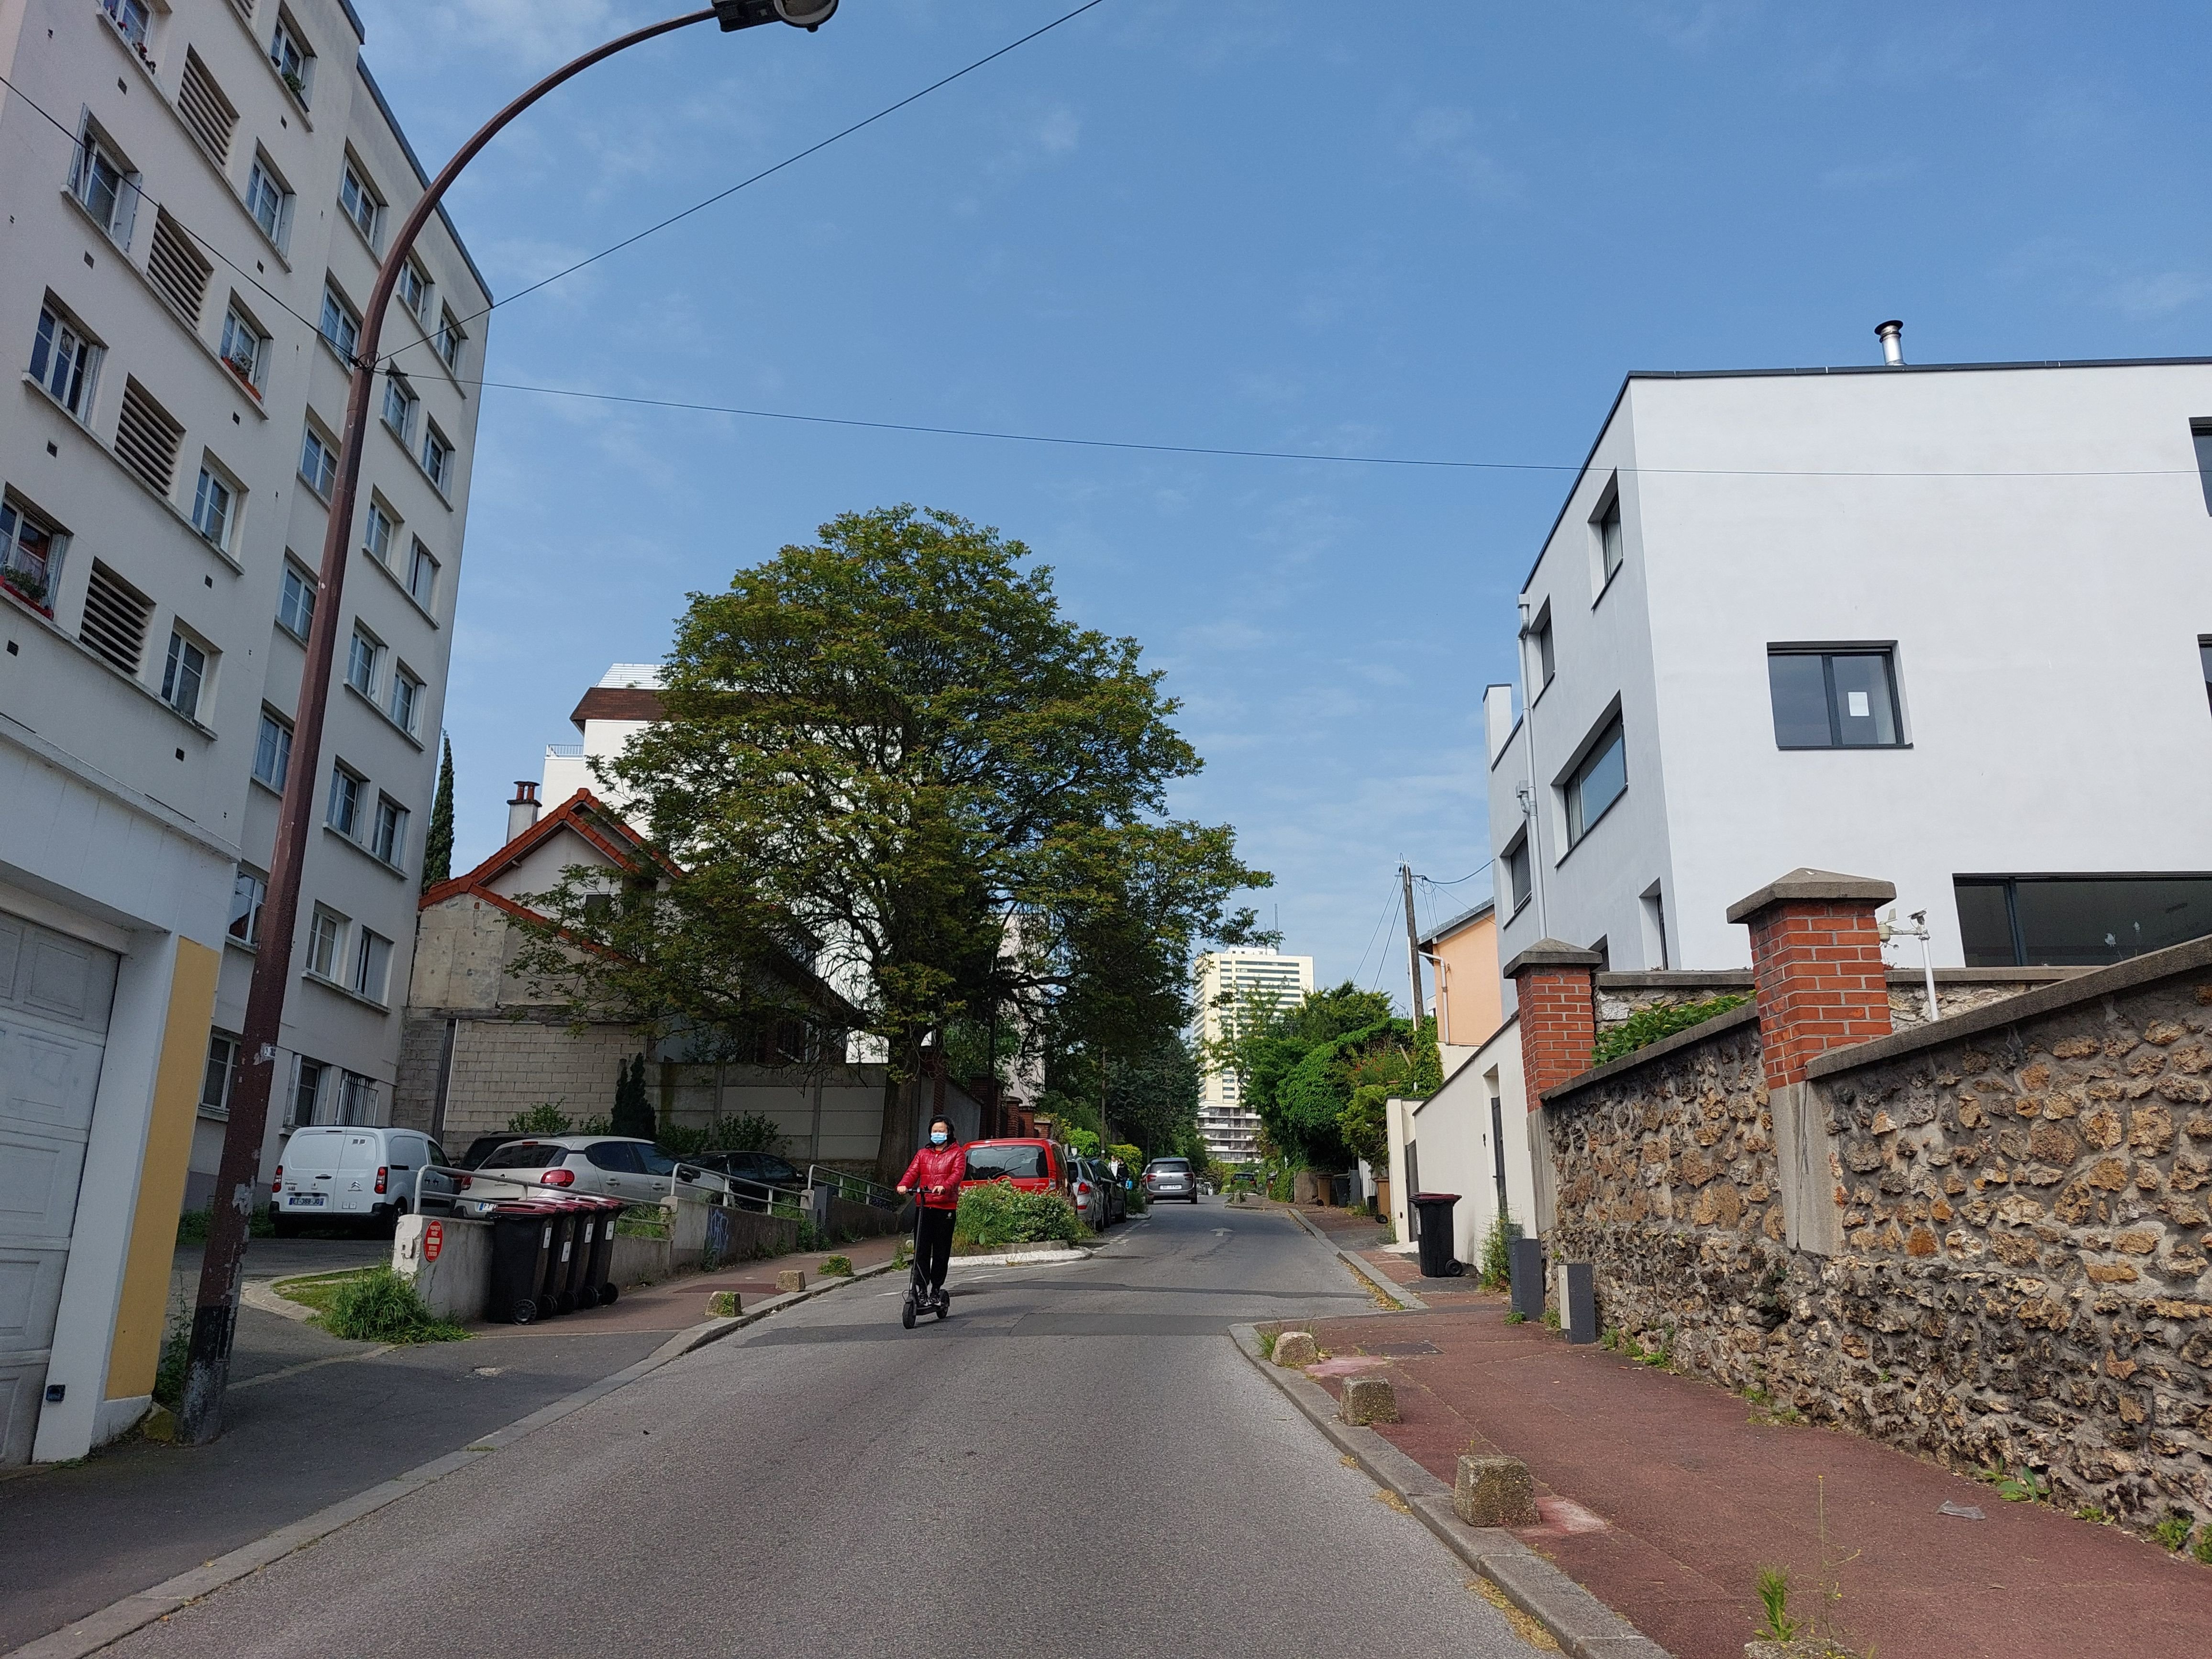 Montreuil, ce lundi 22 mai. Le Grand Chemin, qui passera par la rue Hoche, est une boucle verte qui reliera Fontenay-sous-Bois (Val-de-Marne) à l'est de Paris, en passant par Est Ensemble. LP/E.M.